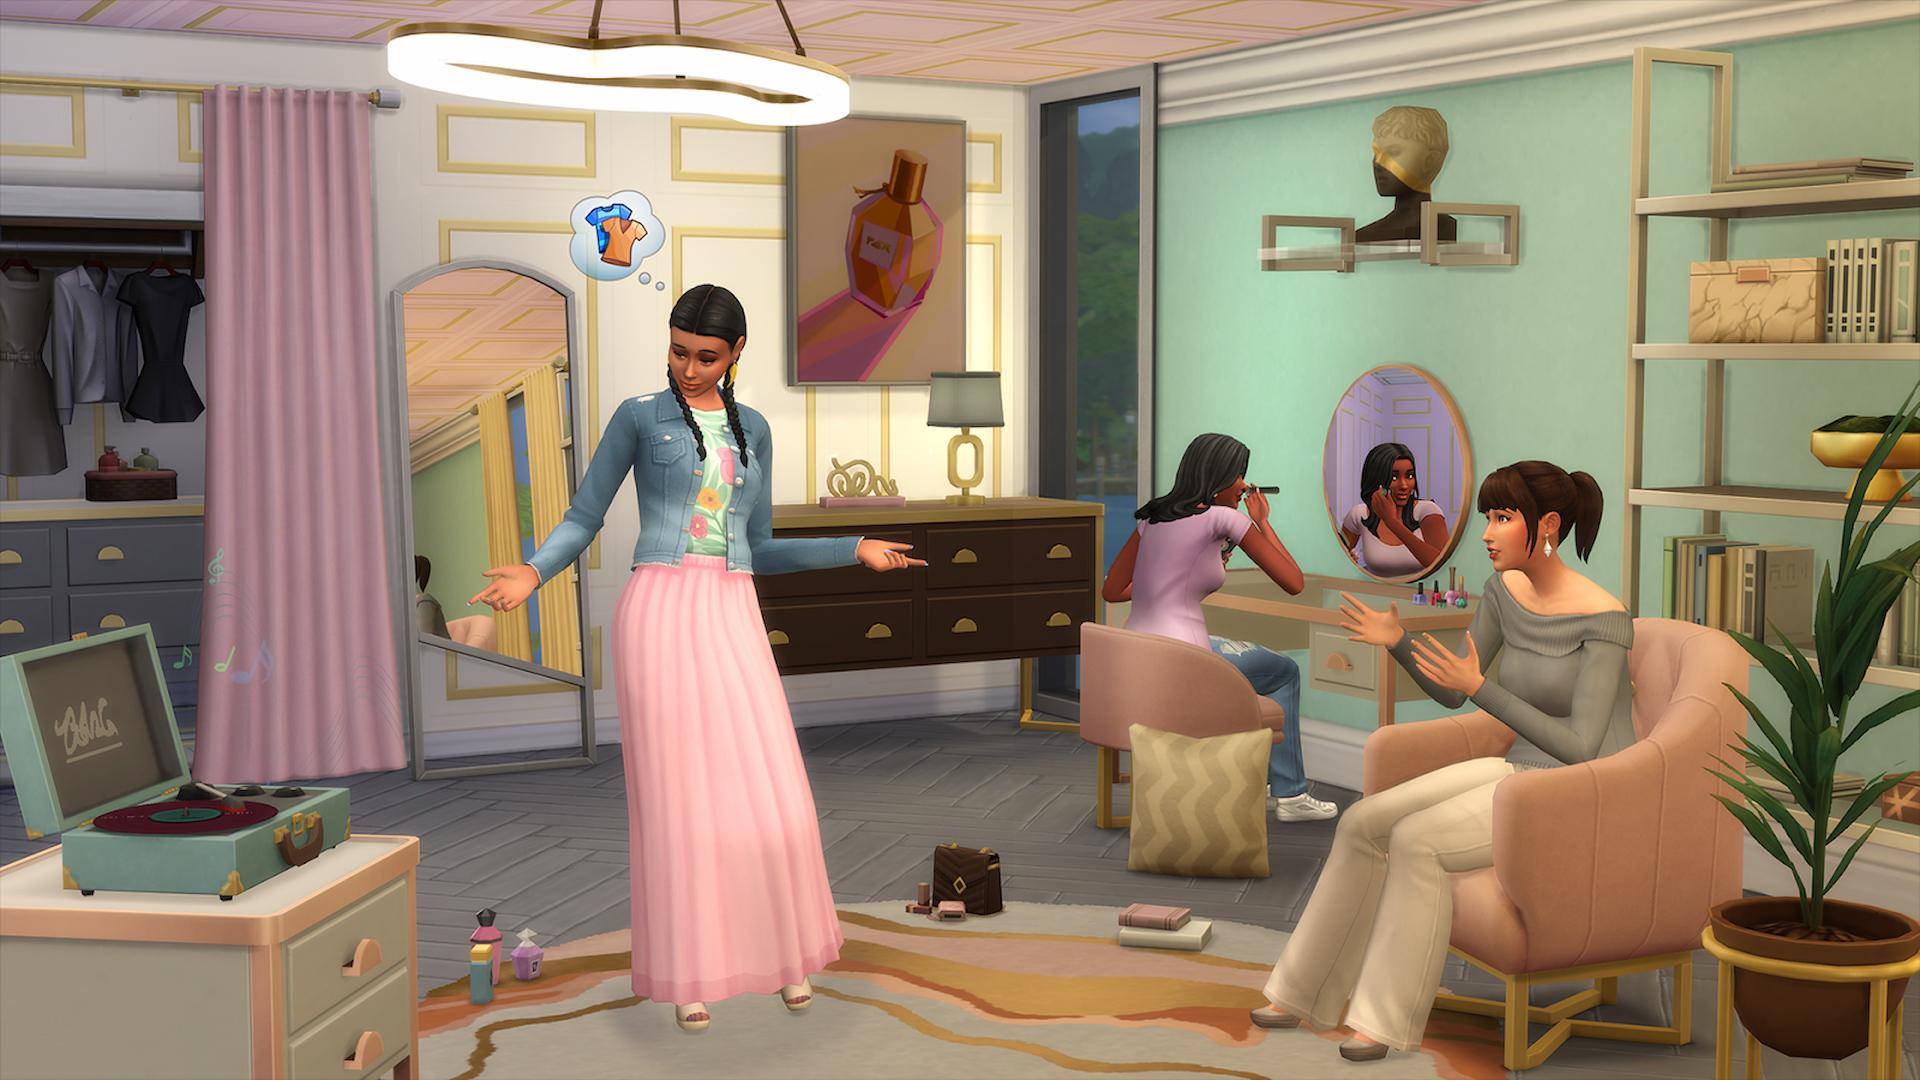 Sims 4モダンな高級キットのスクリーンショットブティックでシムズを見せ、服を着て、メイクアップをしている